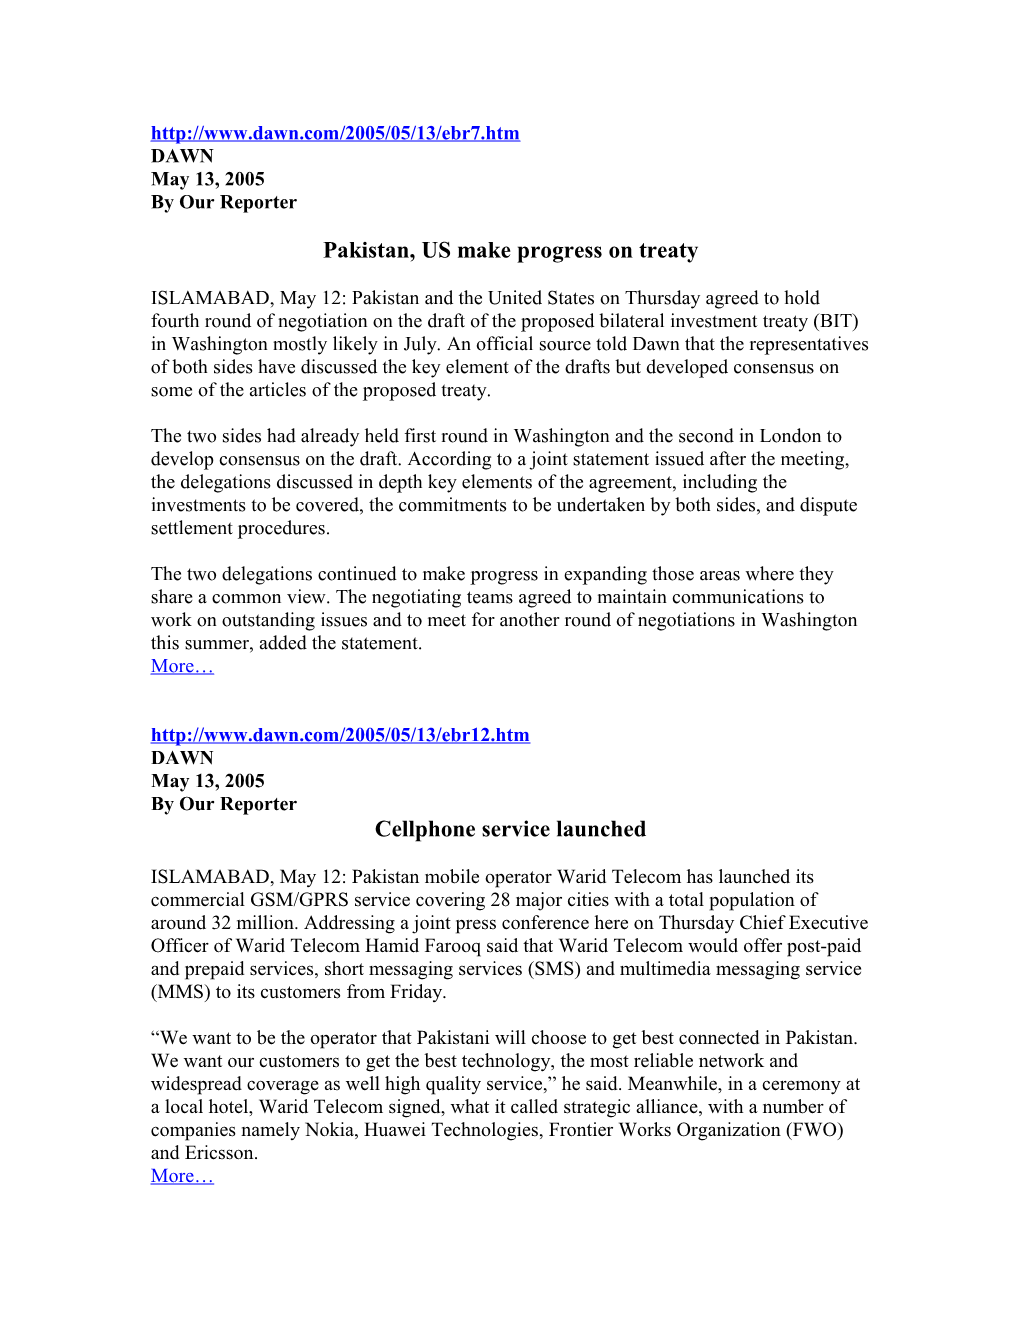 Pakistan, US Make Progress on Treaty